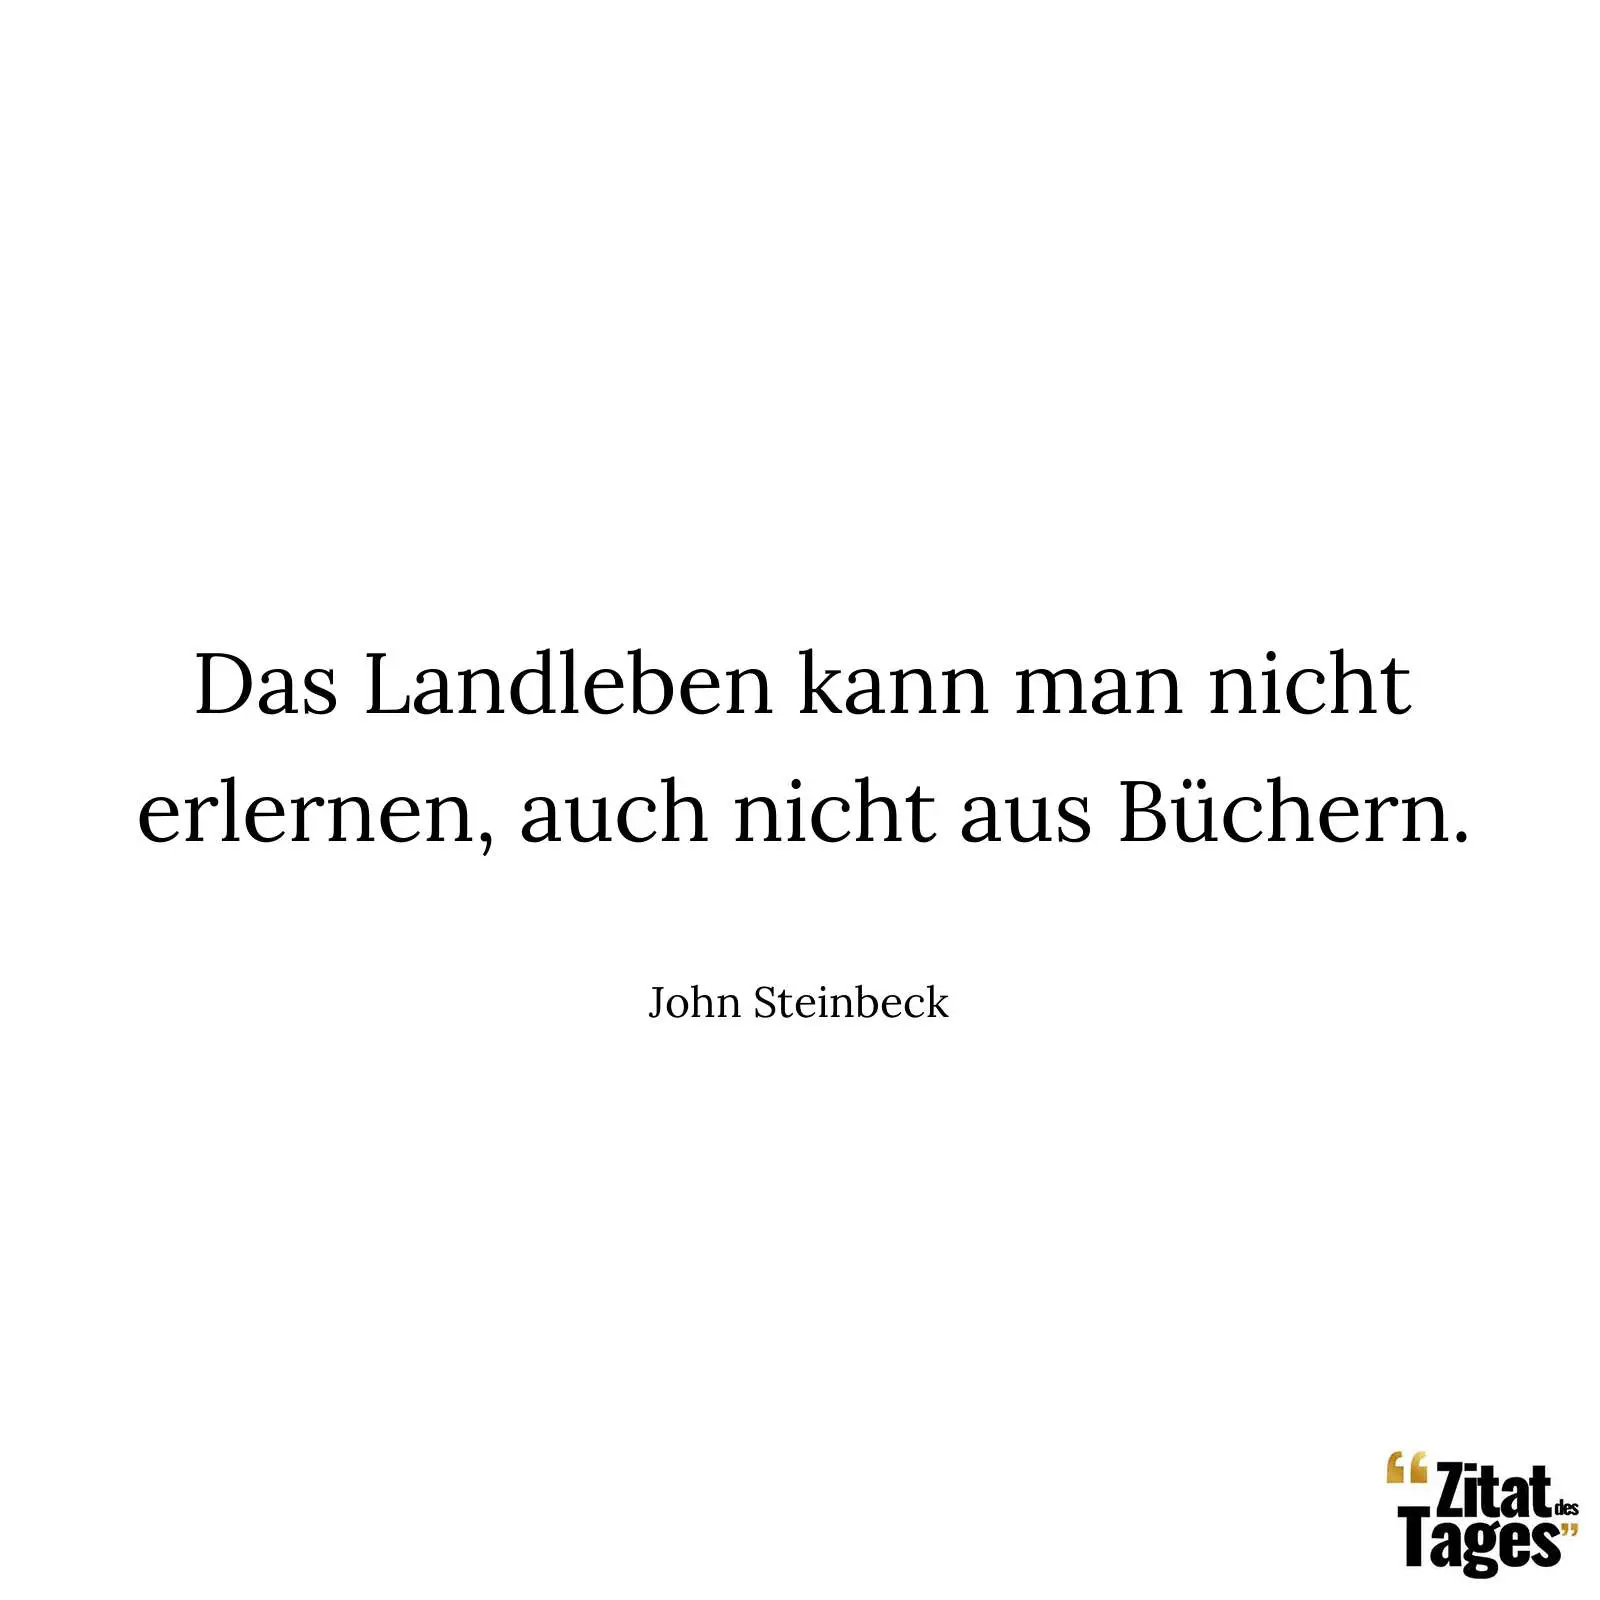 Das Landleben kann man nicht erlernen, auch nicht aus Büchern. - John Steinbeck